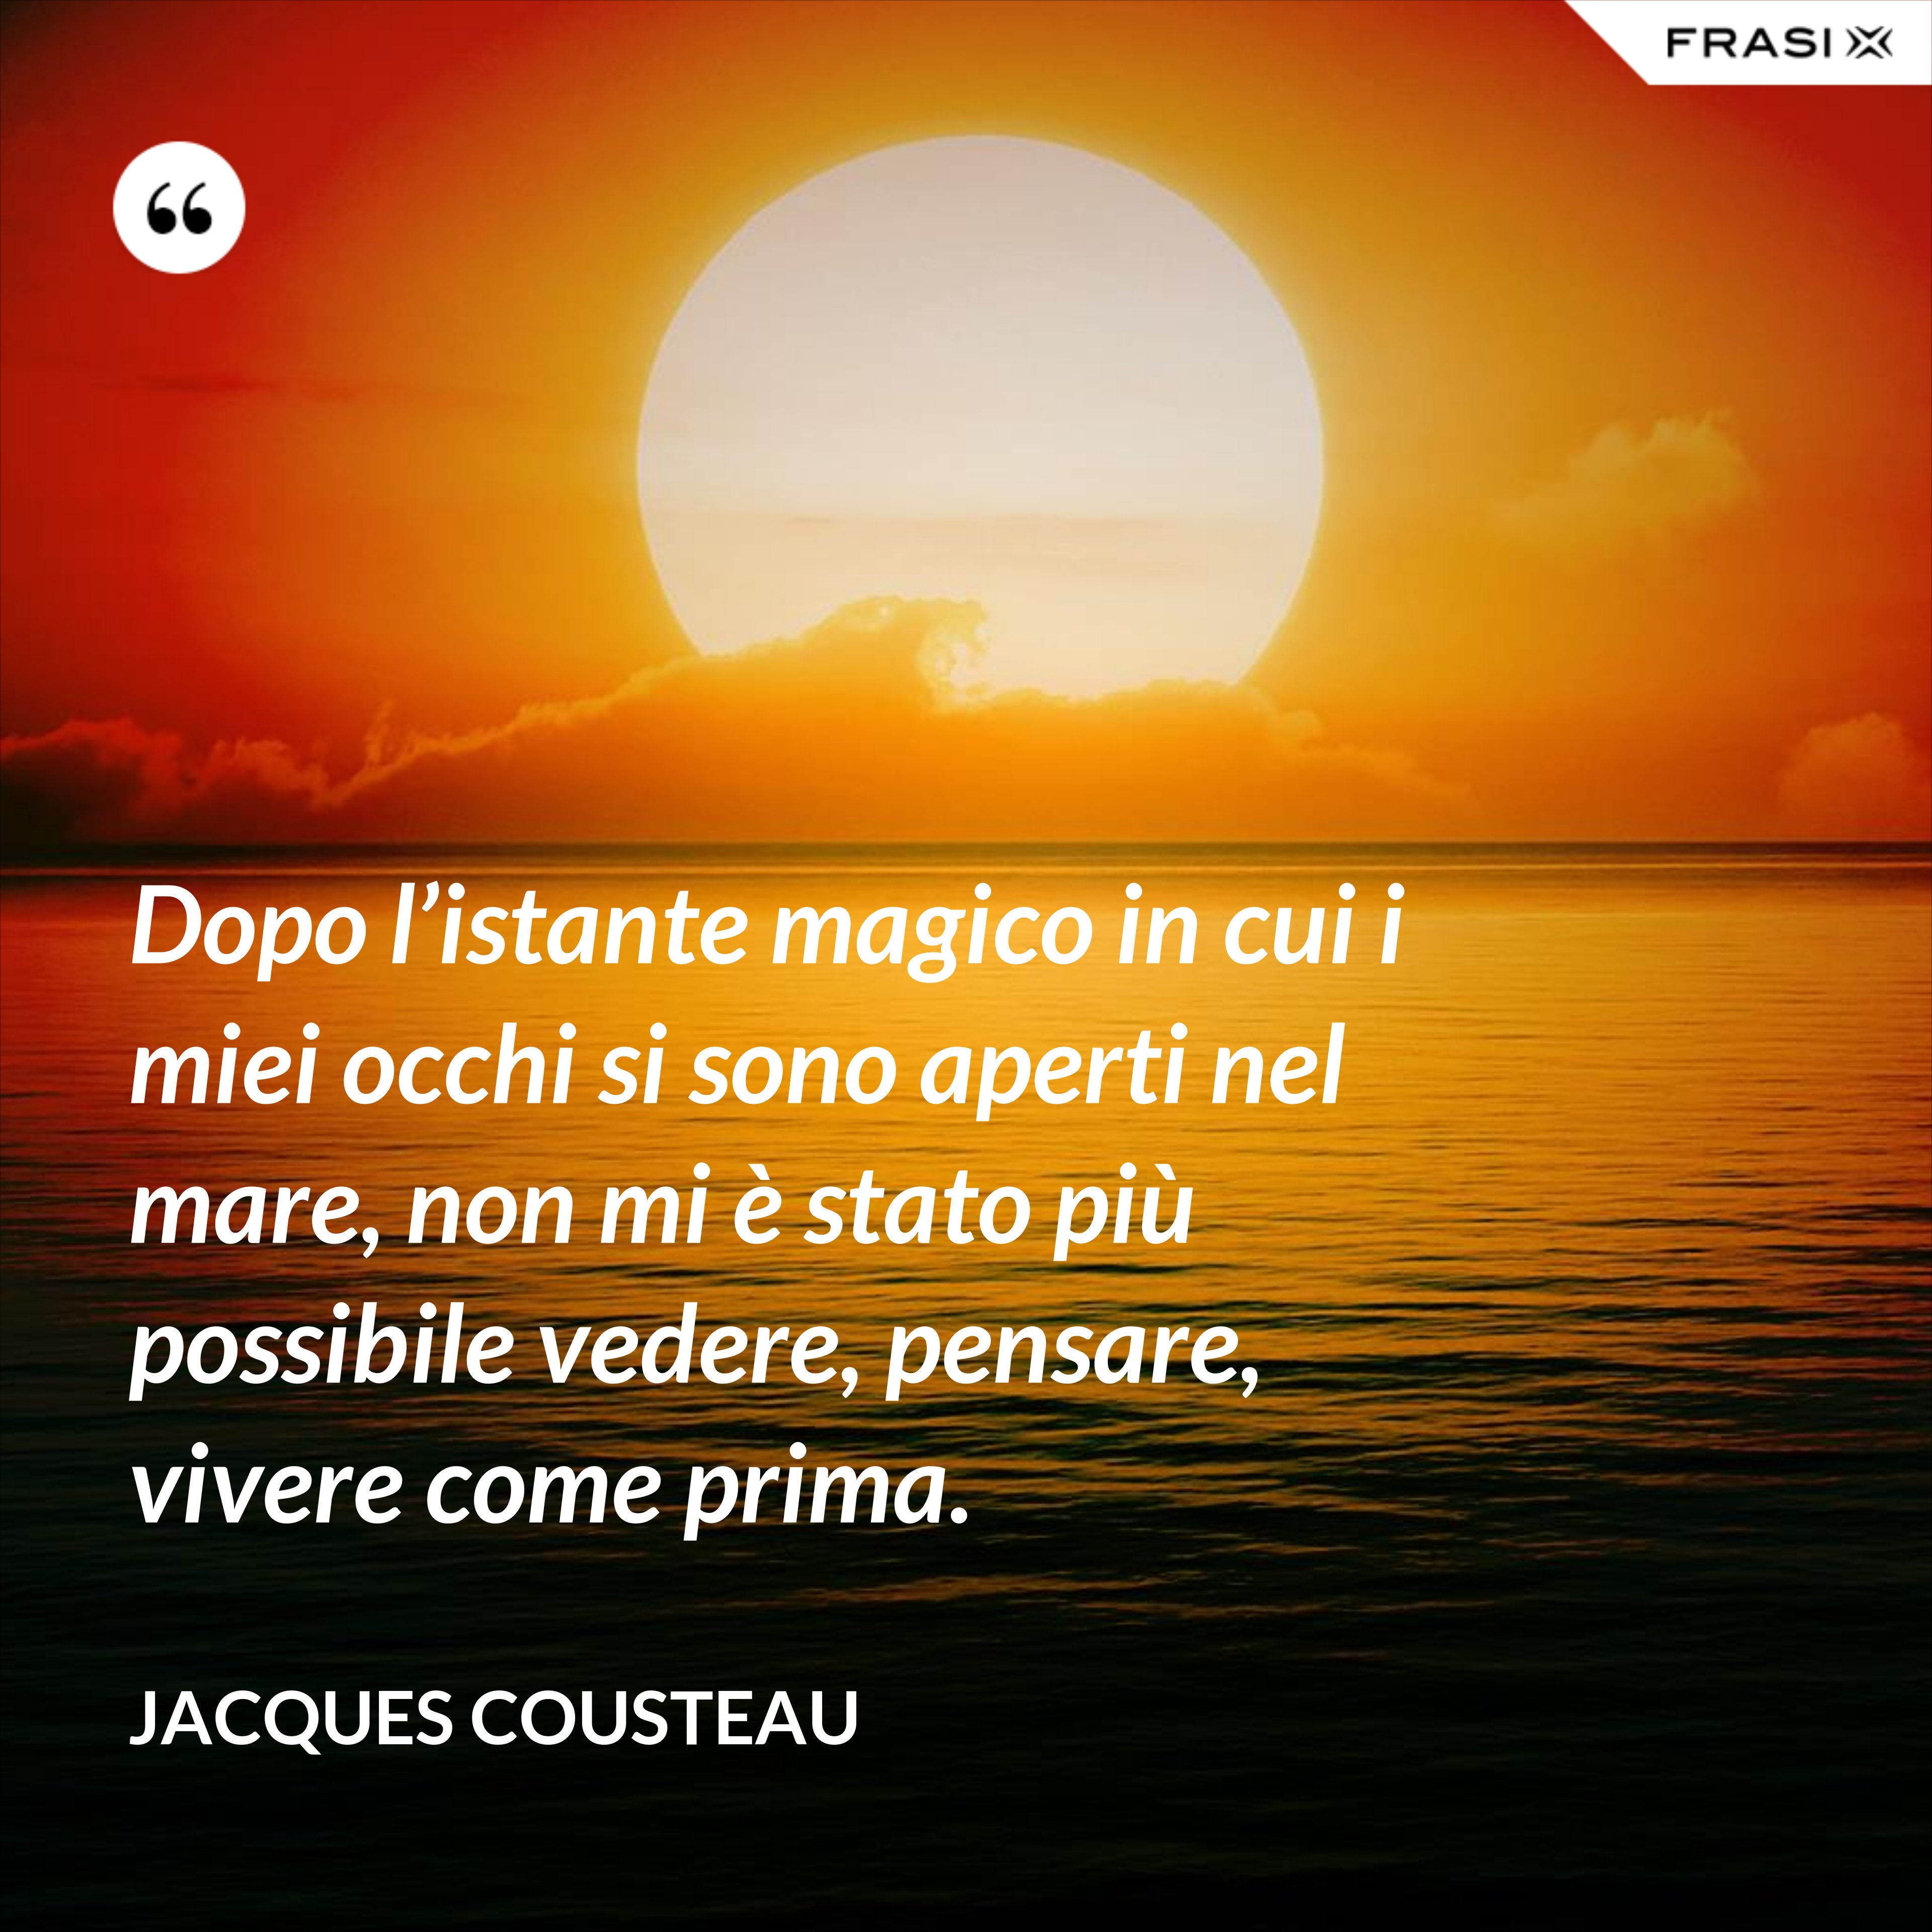 Dopo l’istante magico in cui i miei occhi si sono aperti nel mare, non mi è stato più possibile vedere, pensare, vivere come prima. - Jacques Cousteau